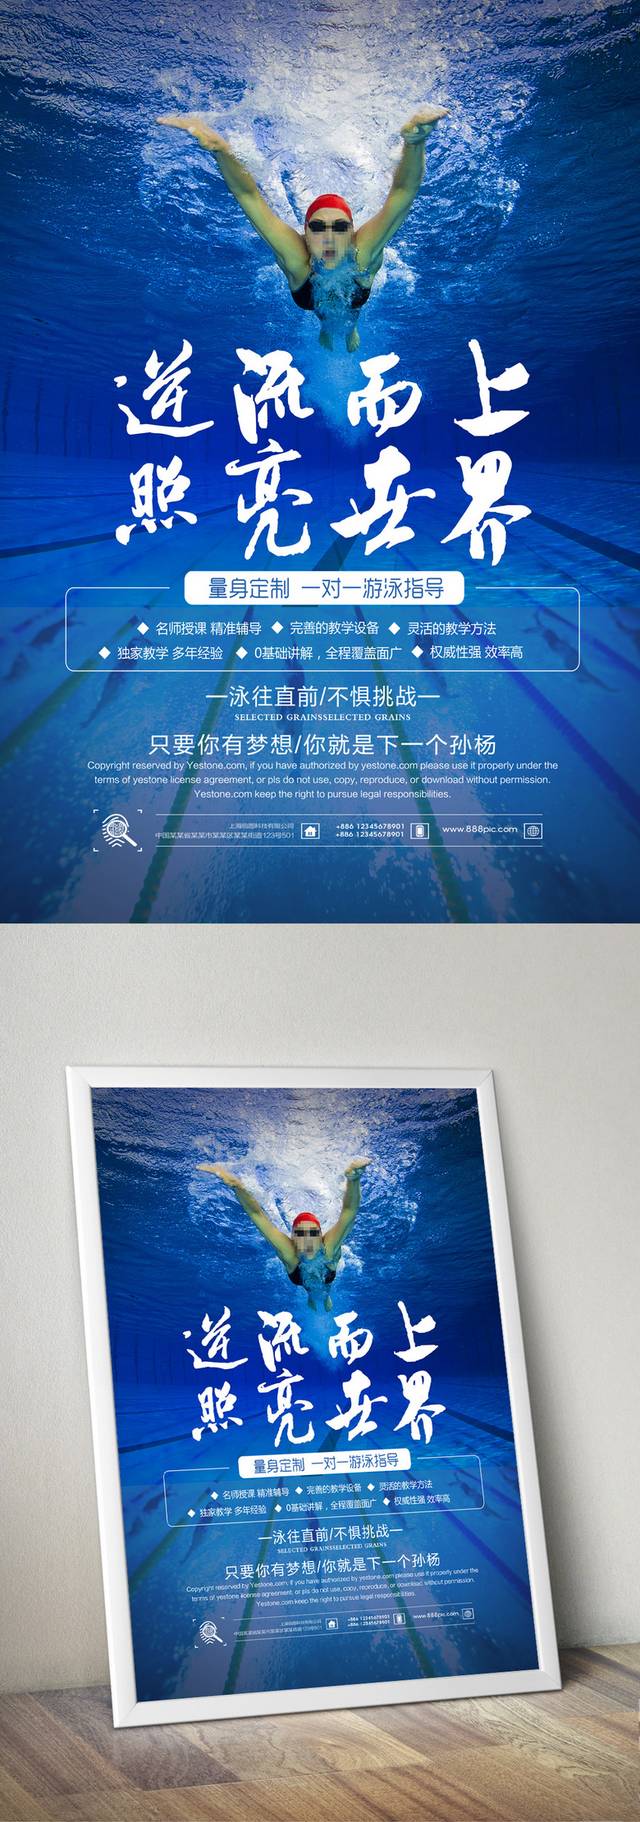 少儿游泳培训班招生宣传海报